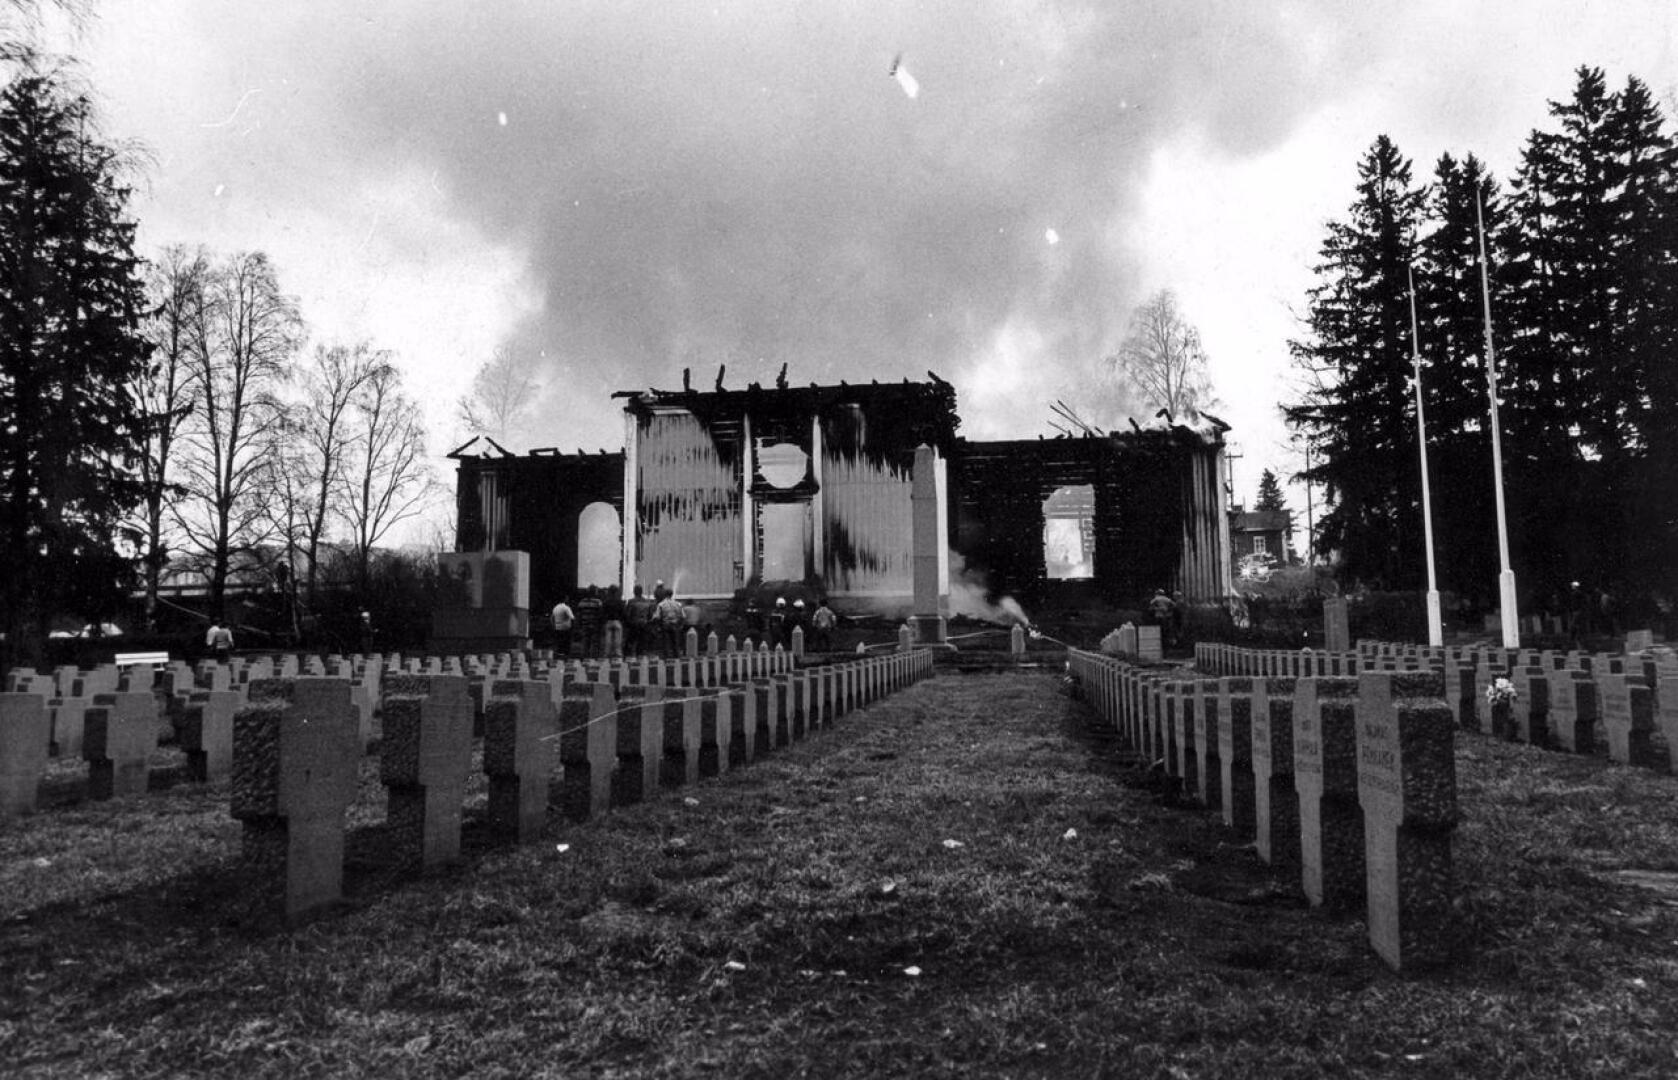 Rautjärven kirkon tuhopoltto jouluaamuna toi monelle mieleen muistoja Haapaveden kirkon palosta toukokuulta 1981. Ylivieskan kirkko tuhoutui vastaavassa palossa 2016 pääsiäisenä.